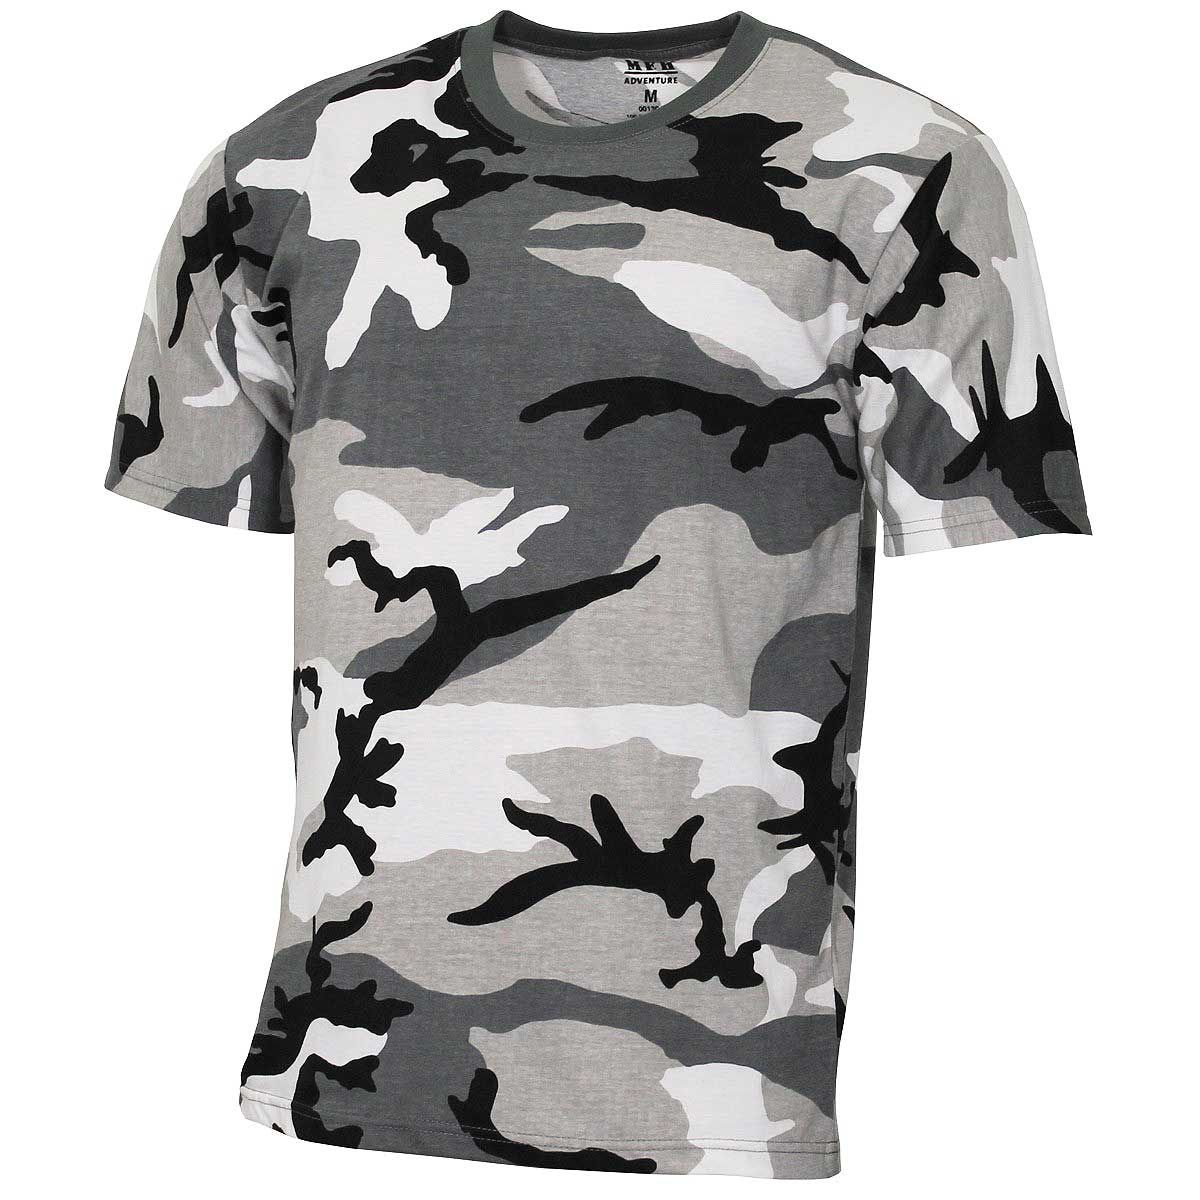 Kinder Armee Anzieh Satz Armee Bedrucktes T-Shirt Dpm Kappe Hundemarken 